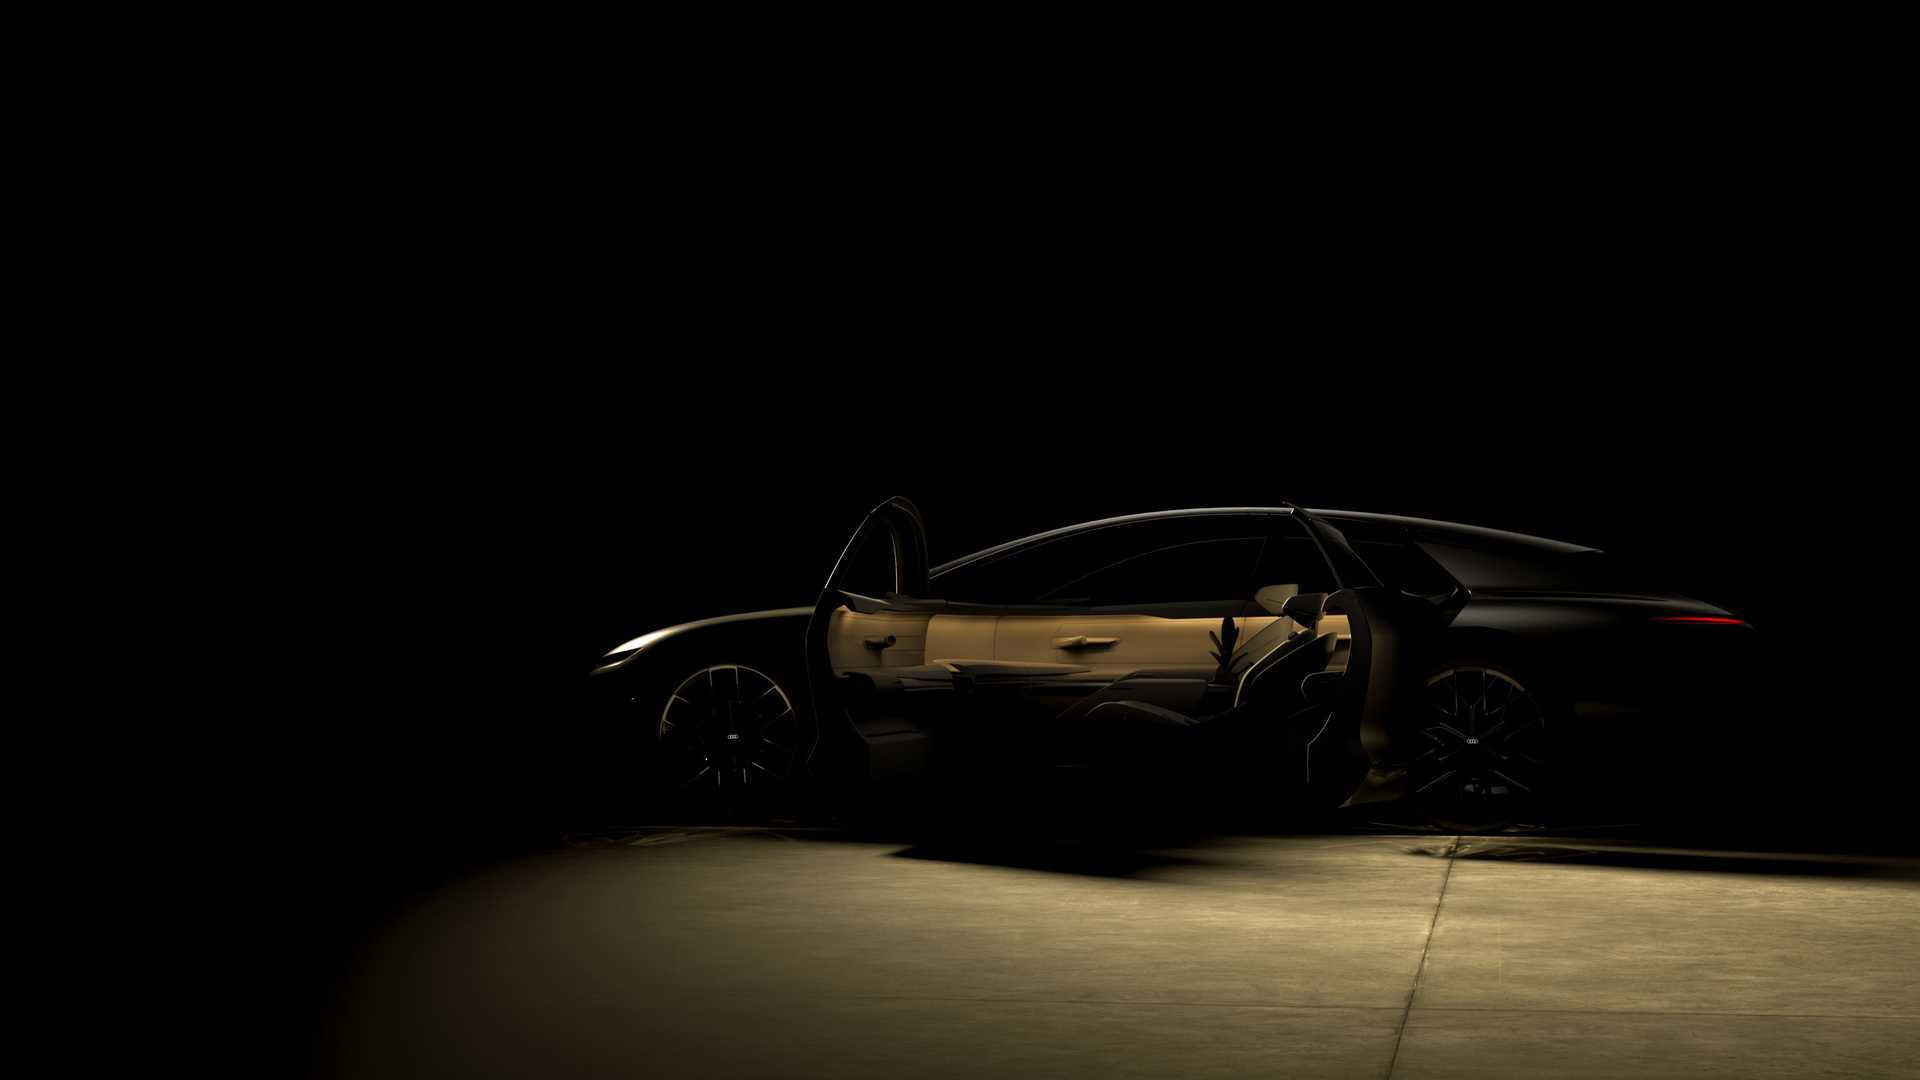 Teaser for Audi Grand Sphere concept